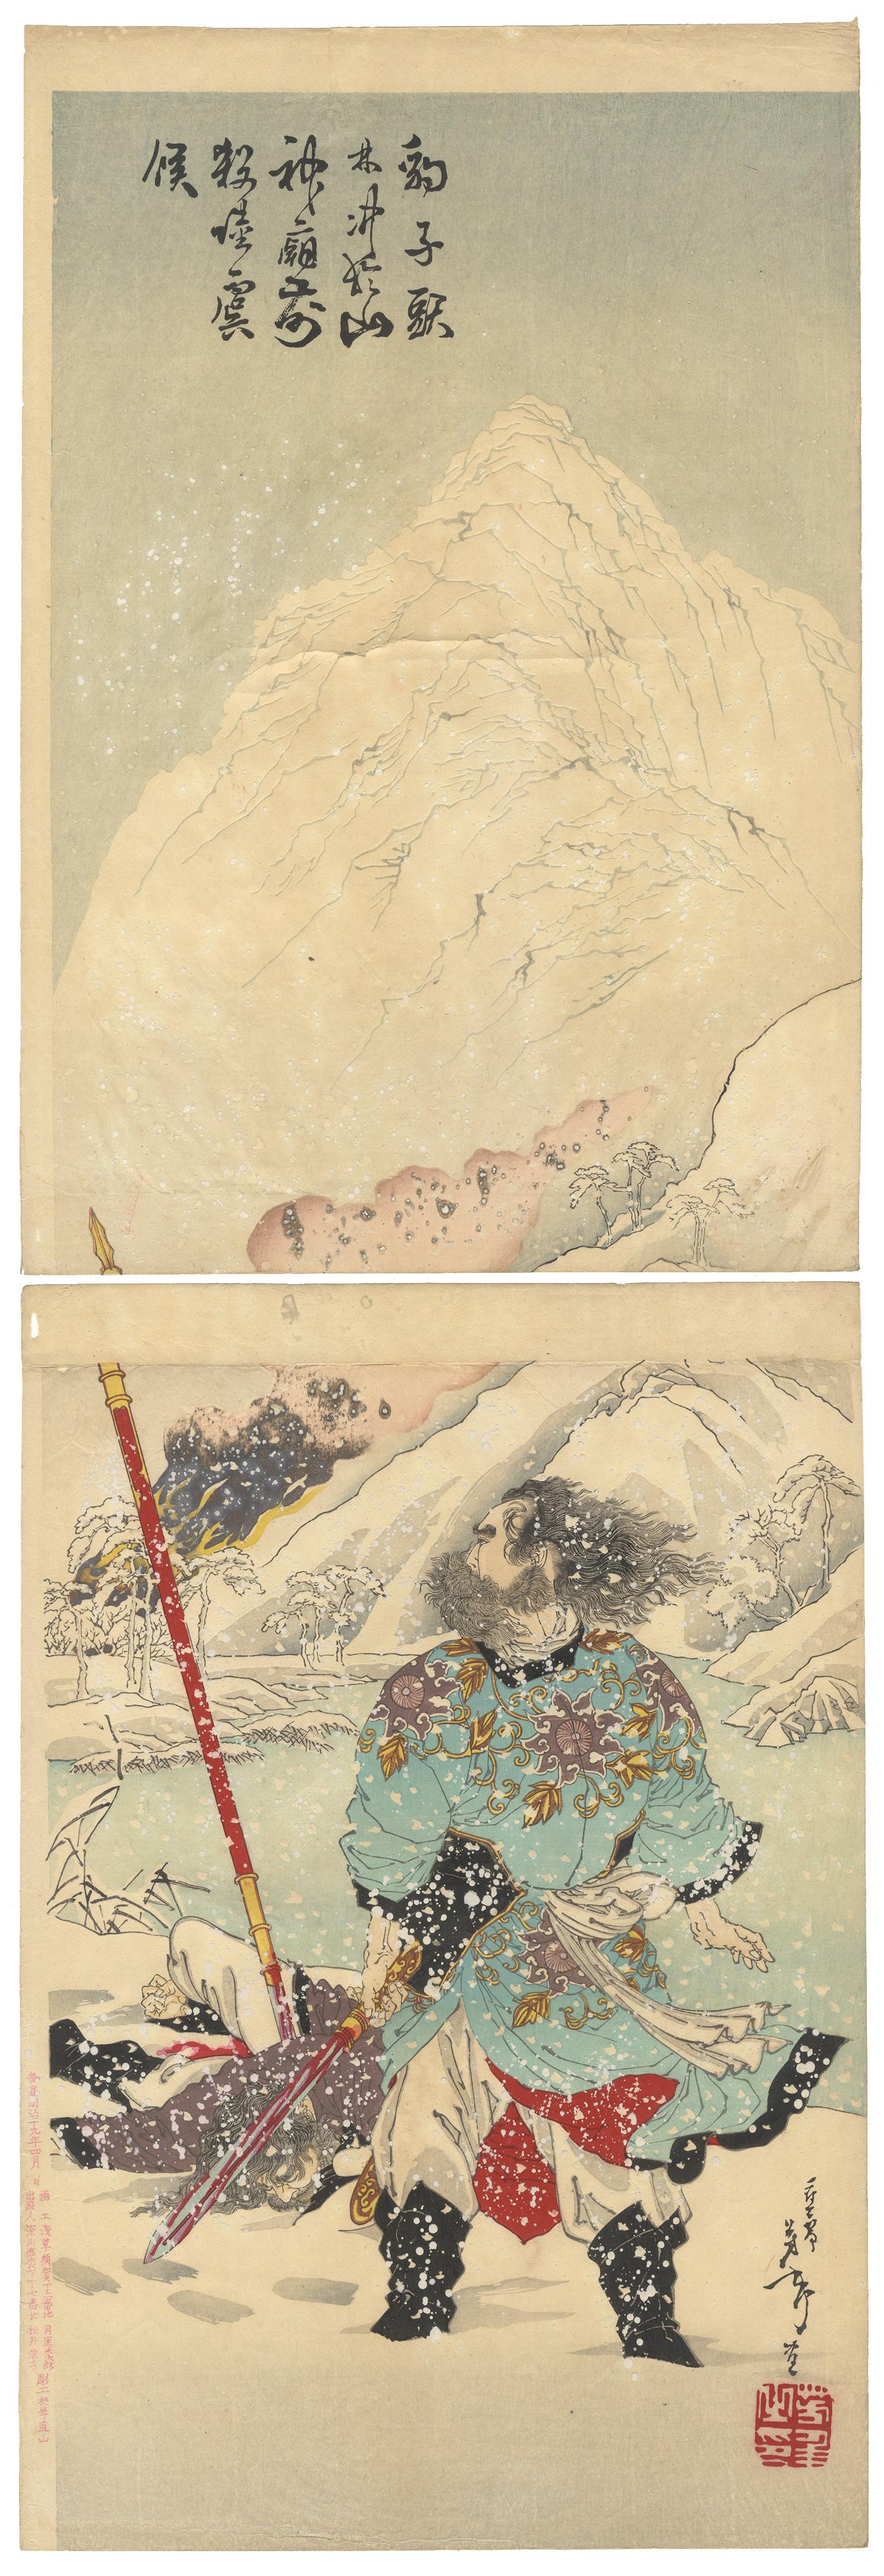 Tsukioka Yoshitoshi Portrait Print - Yoshitoshi, Suikoden, Lin Chong, Lu Qian, Original Japanese Woodblock Print